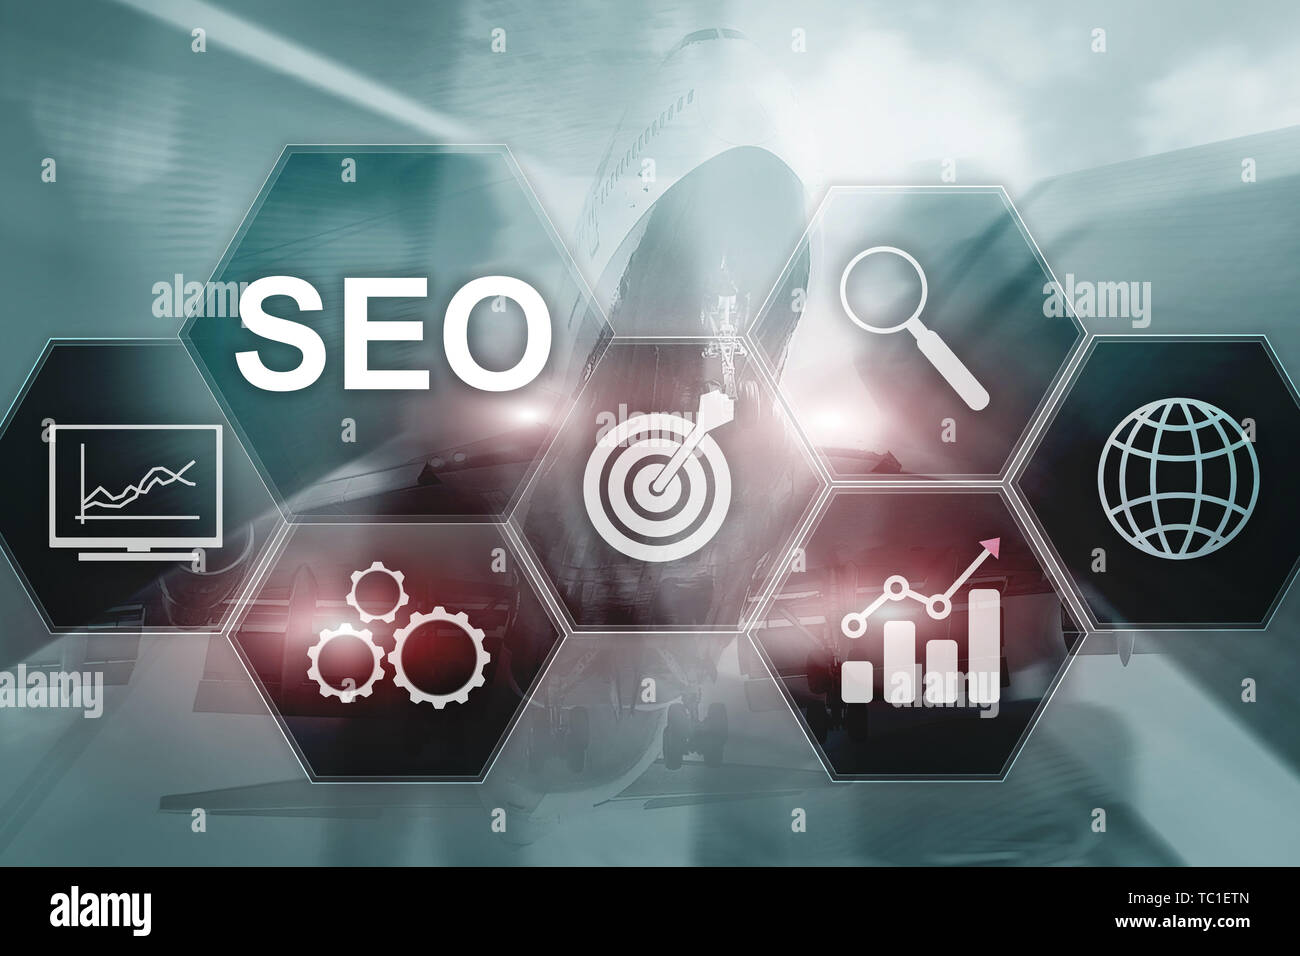 SEO - optimisation des moteurs de recherche, le marketing numérique et la technologie d'internet concept sur arrière-plan flou Banque D'Images